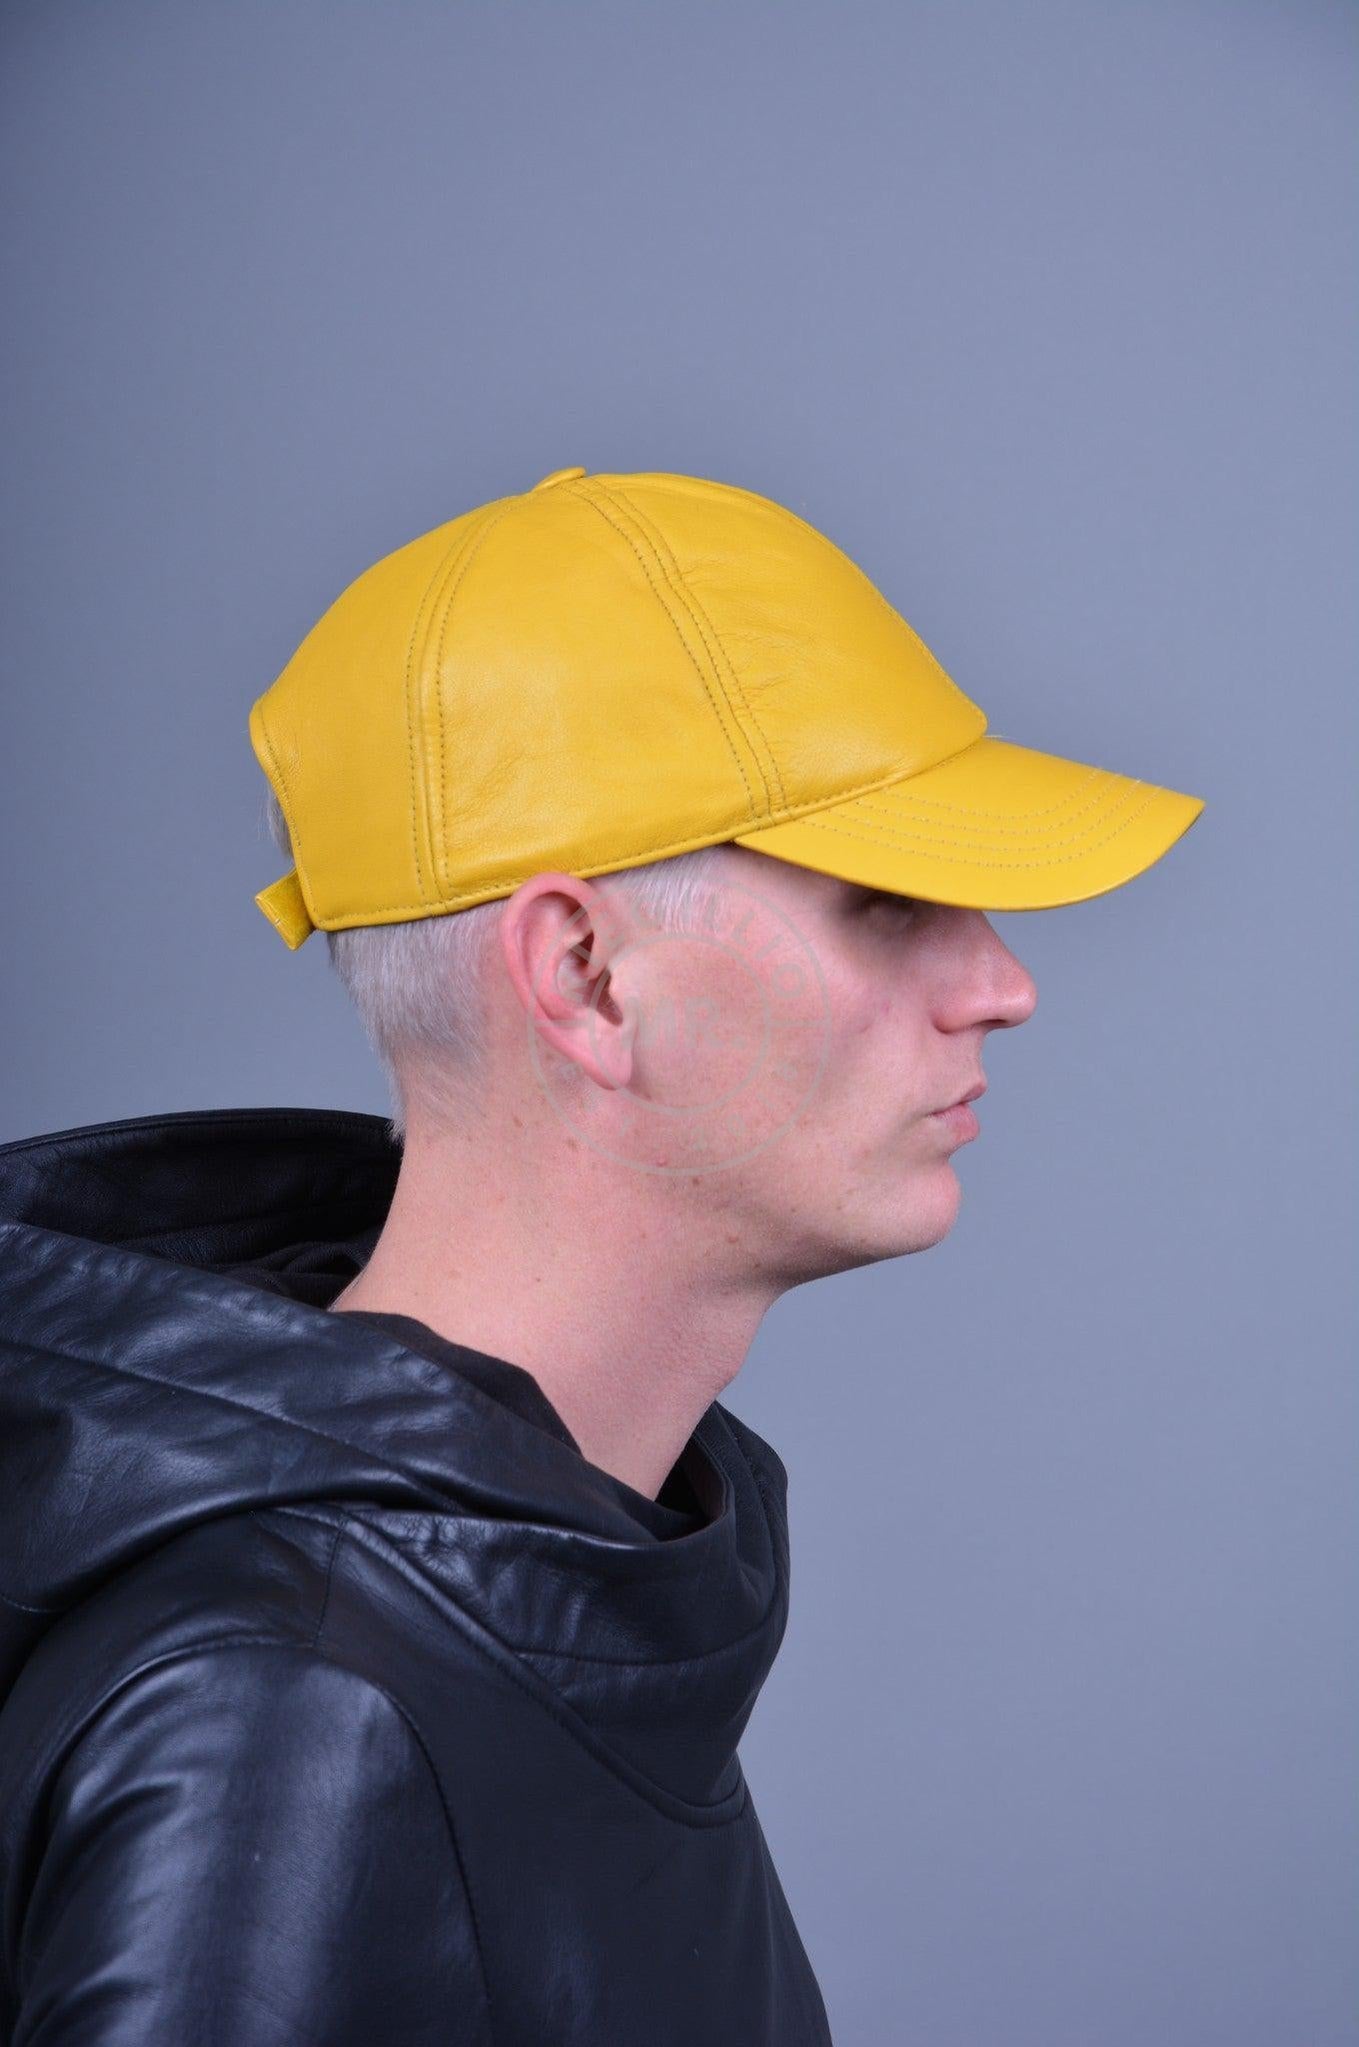 Yellow Leather Cap at MR. Riegillio